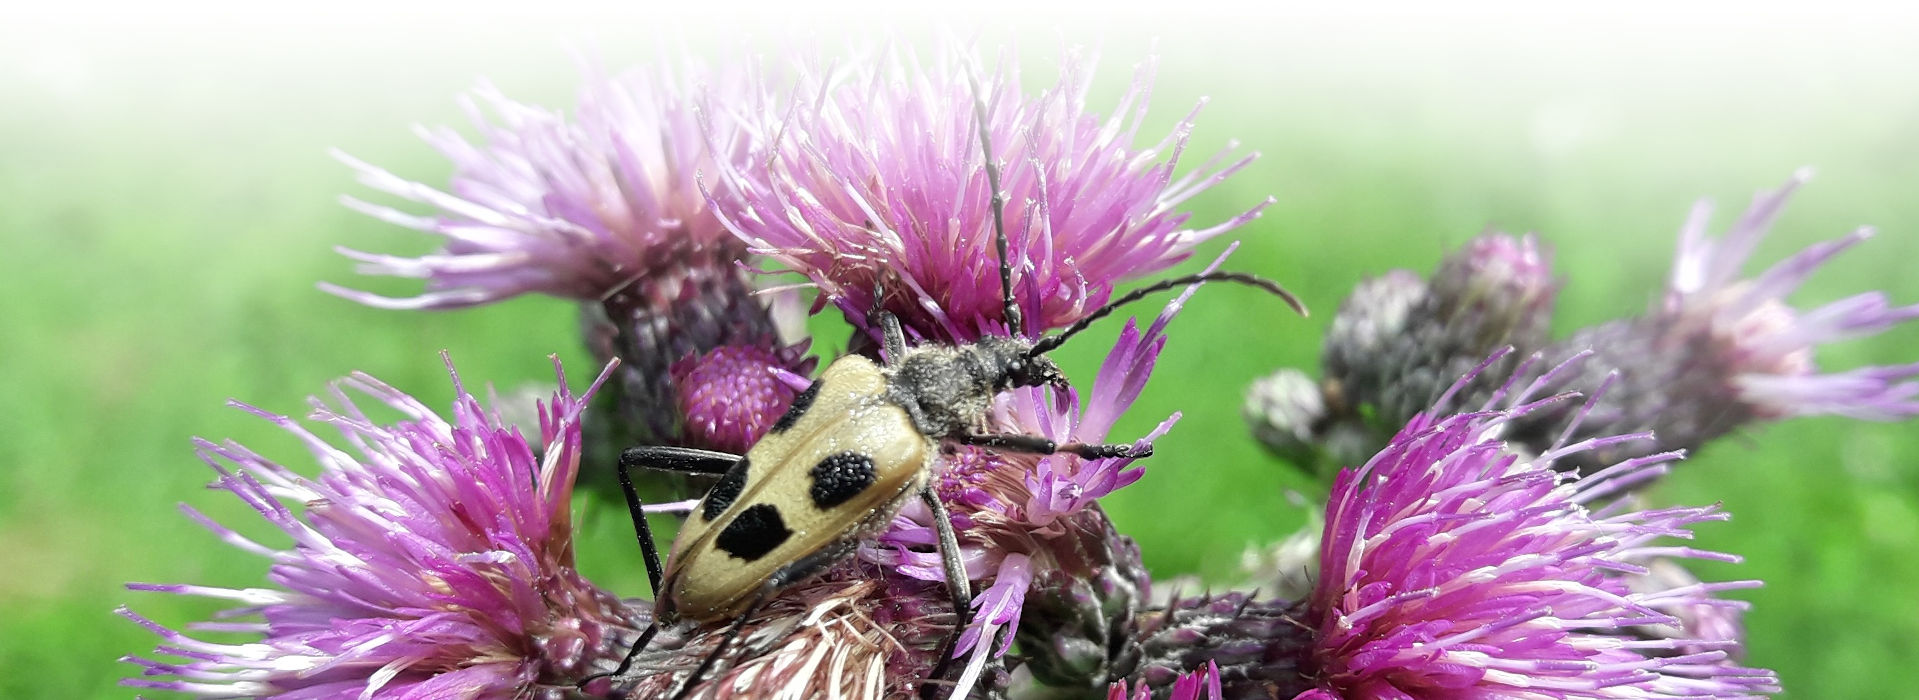 Auf einer lilafarbenen Blüte sitzt ein flacher, gelblicher Käfer mit extrem langen Fühlern und langen Beinen. Auf den Flügeldecken hat er vier symmetrisch angeordnete, dunkle Flecken.